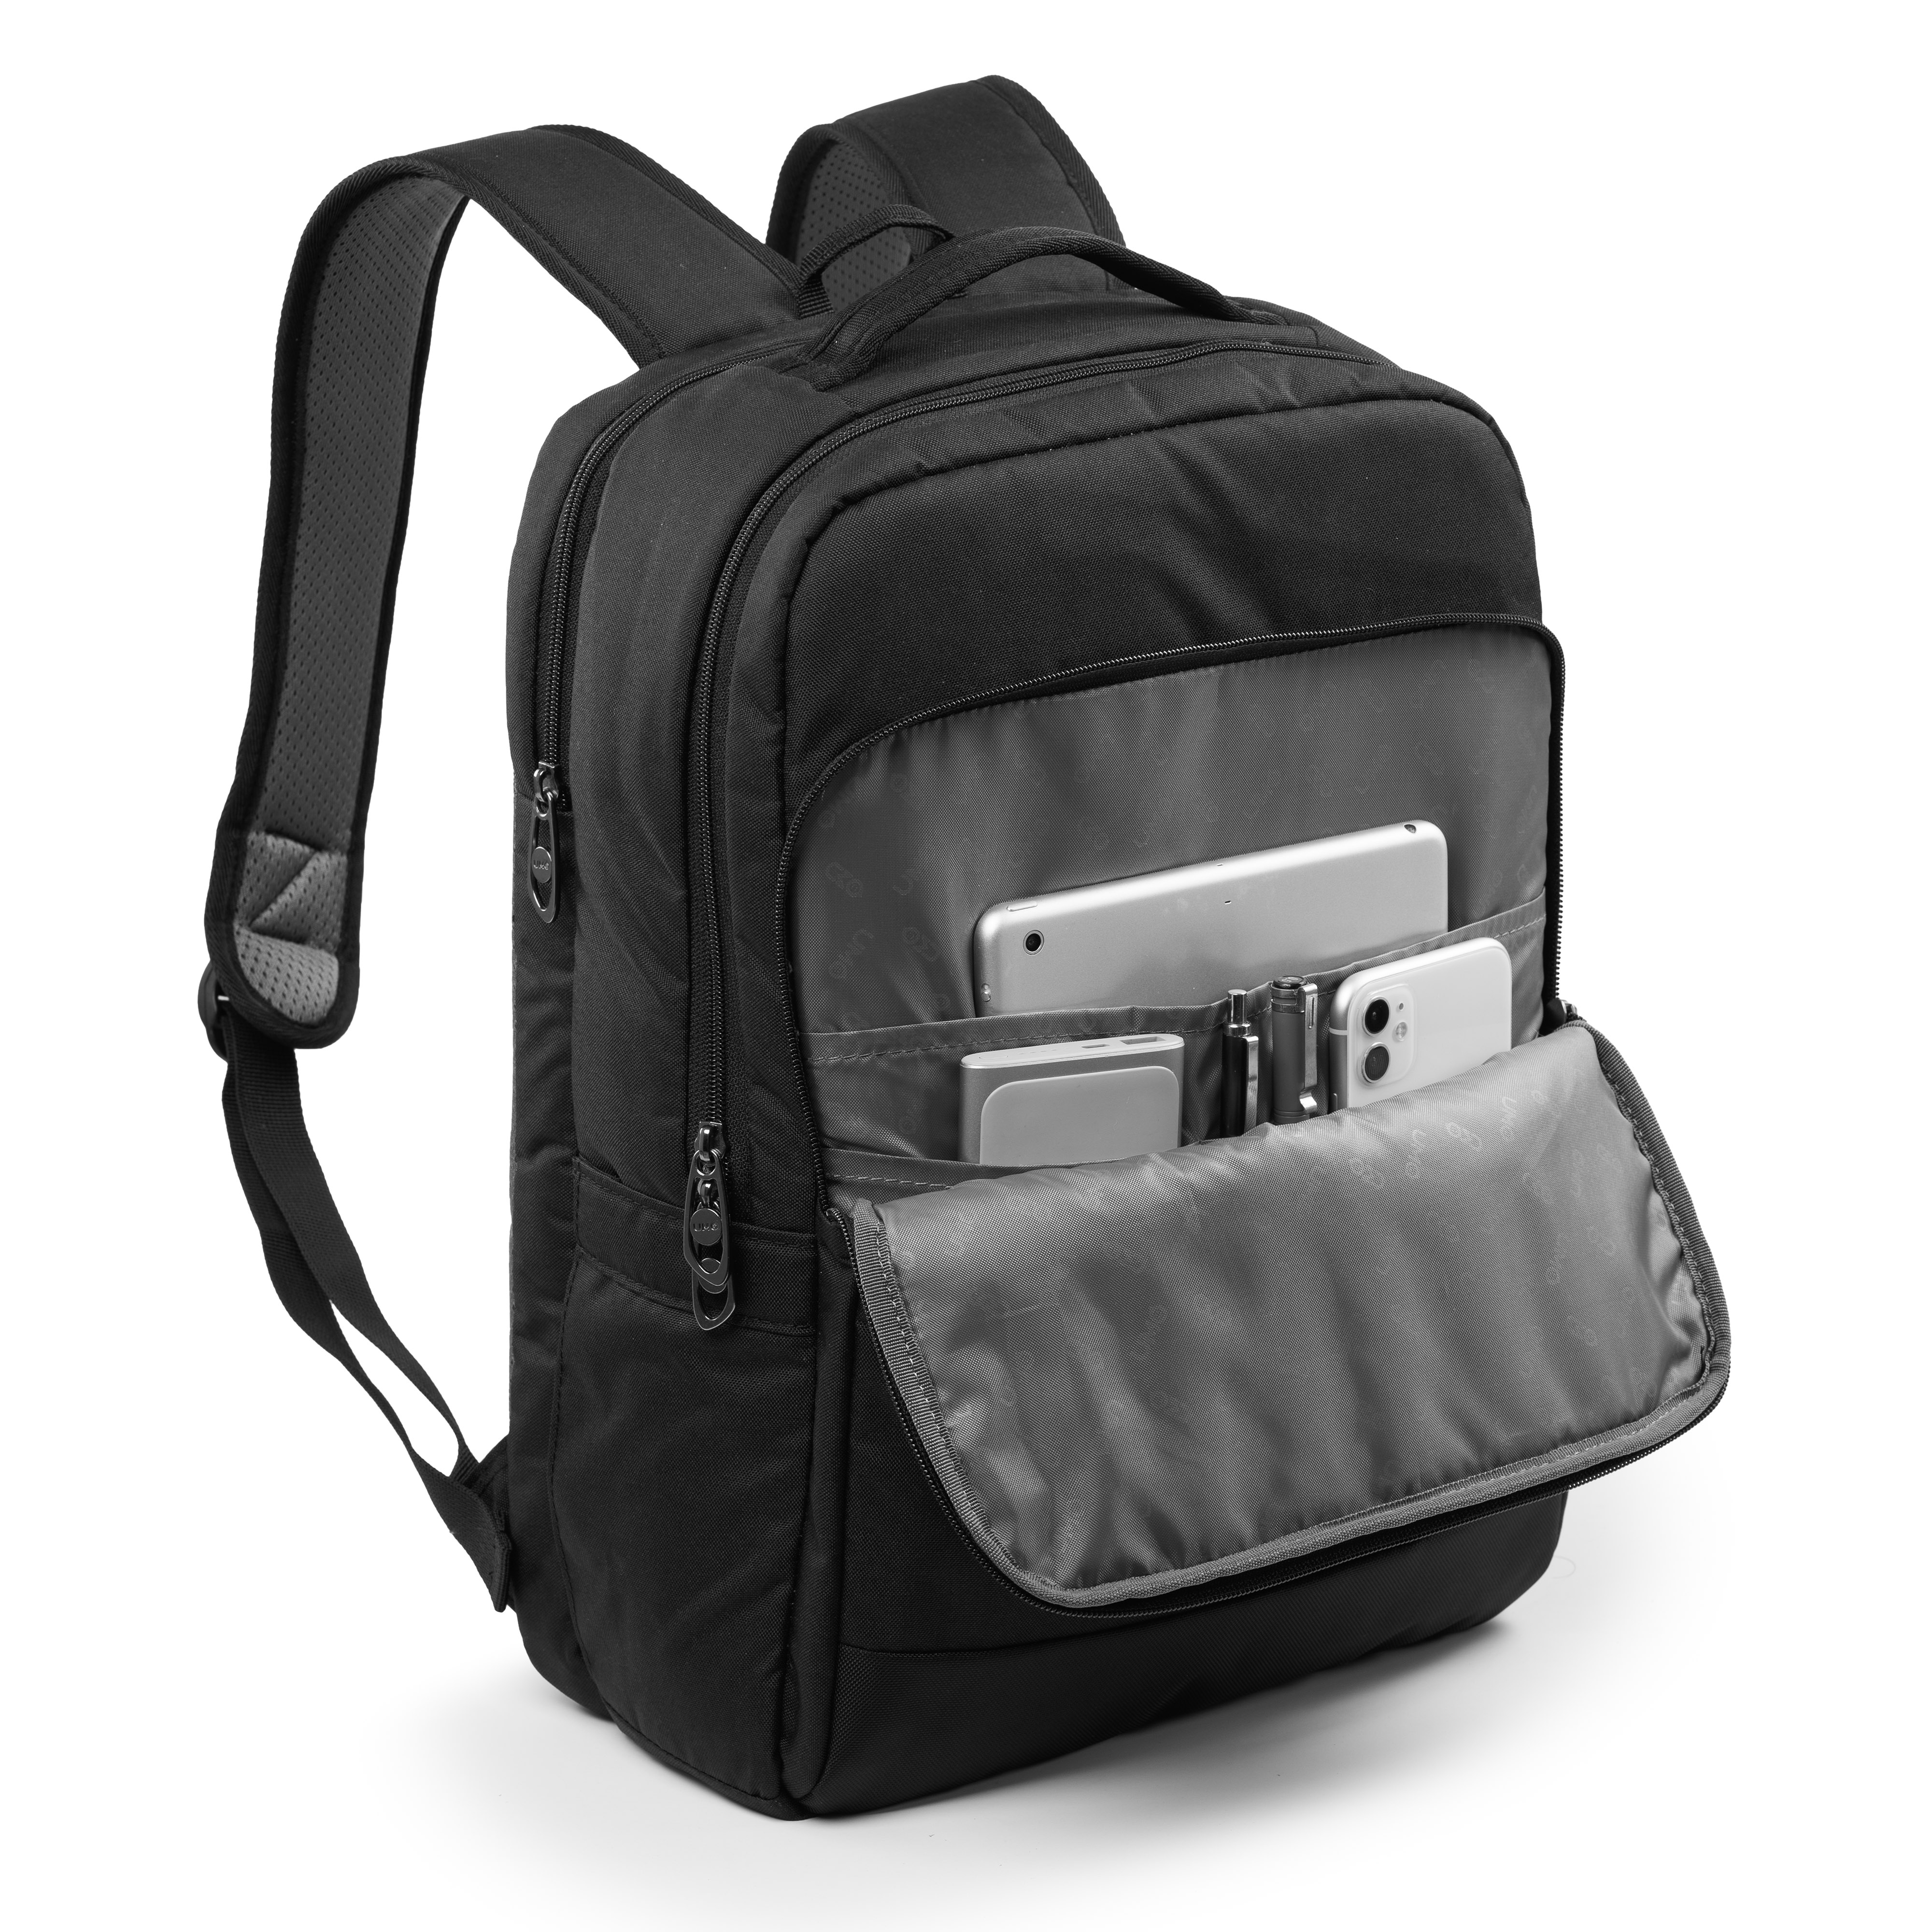 Balo Laptop UMO RENTA Y2213 Backpack 14inch và 15inch - Phong Cách Hàn Quốc - Bảo Hành 12 Năm - Vải Trượt Nước - Hàng Chính Hãng